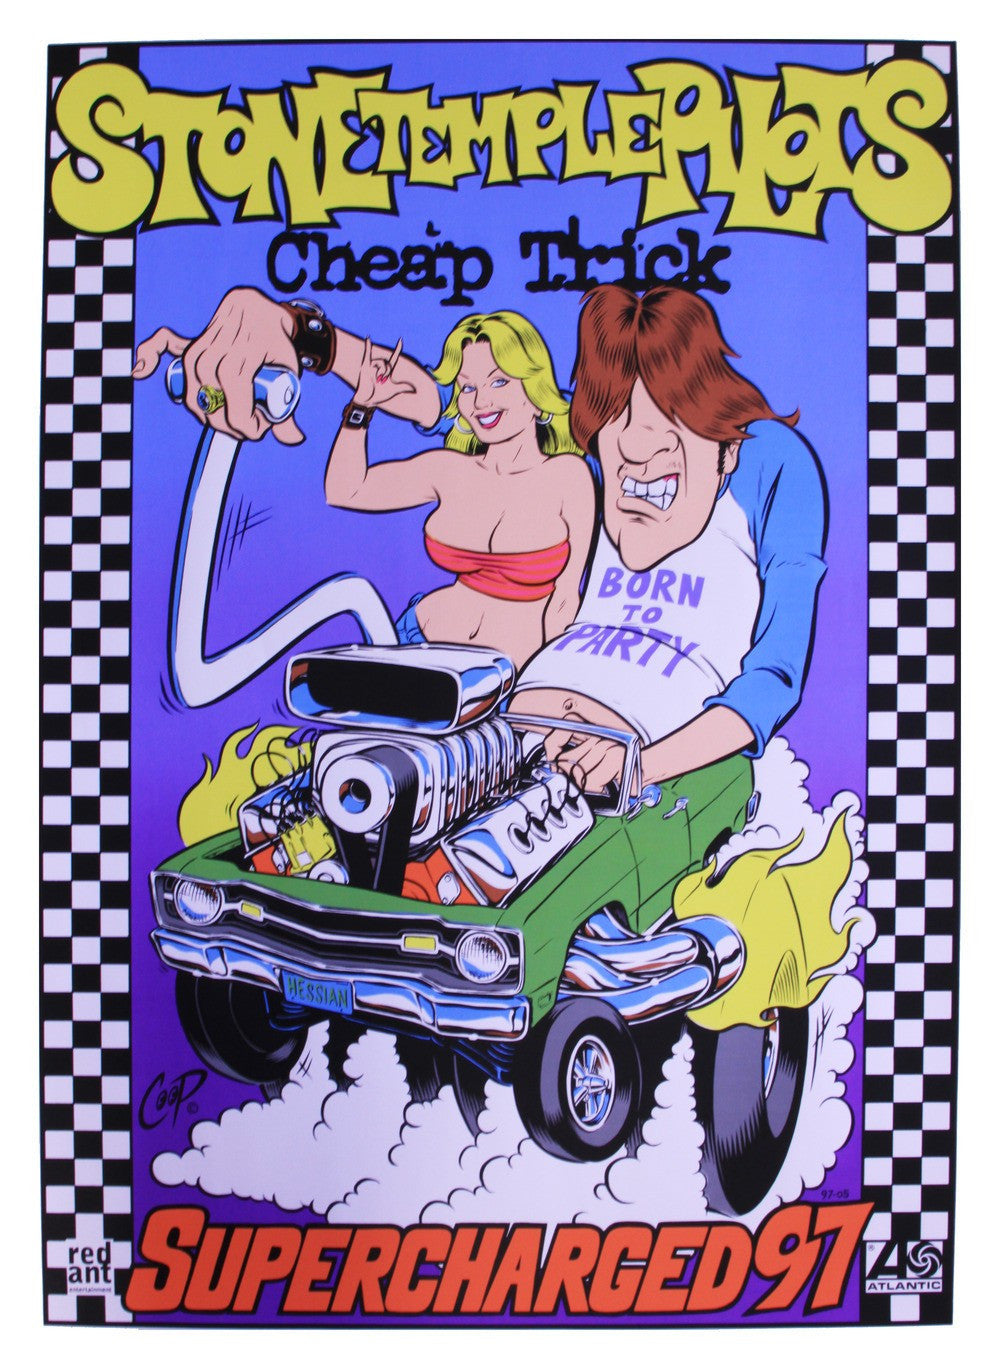 Coop - 1997 -  Stone Temple Pilots / Cheap Trick Tour Concert Poster